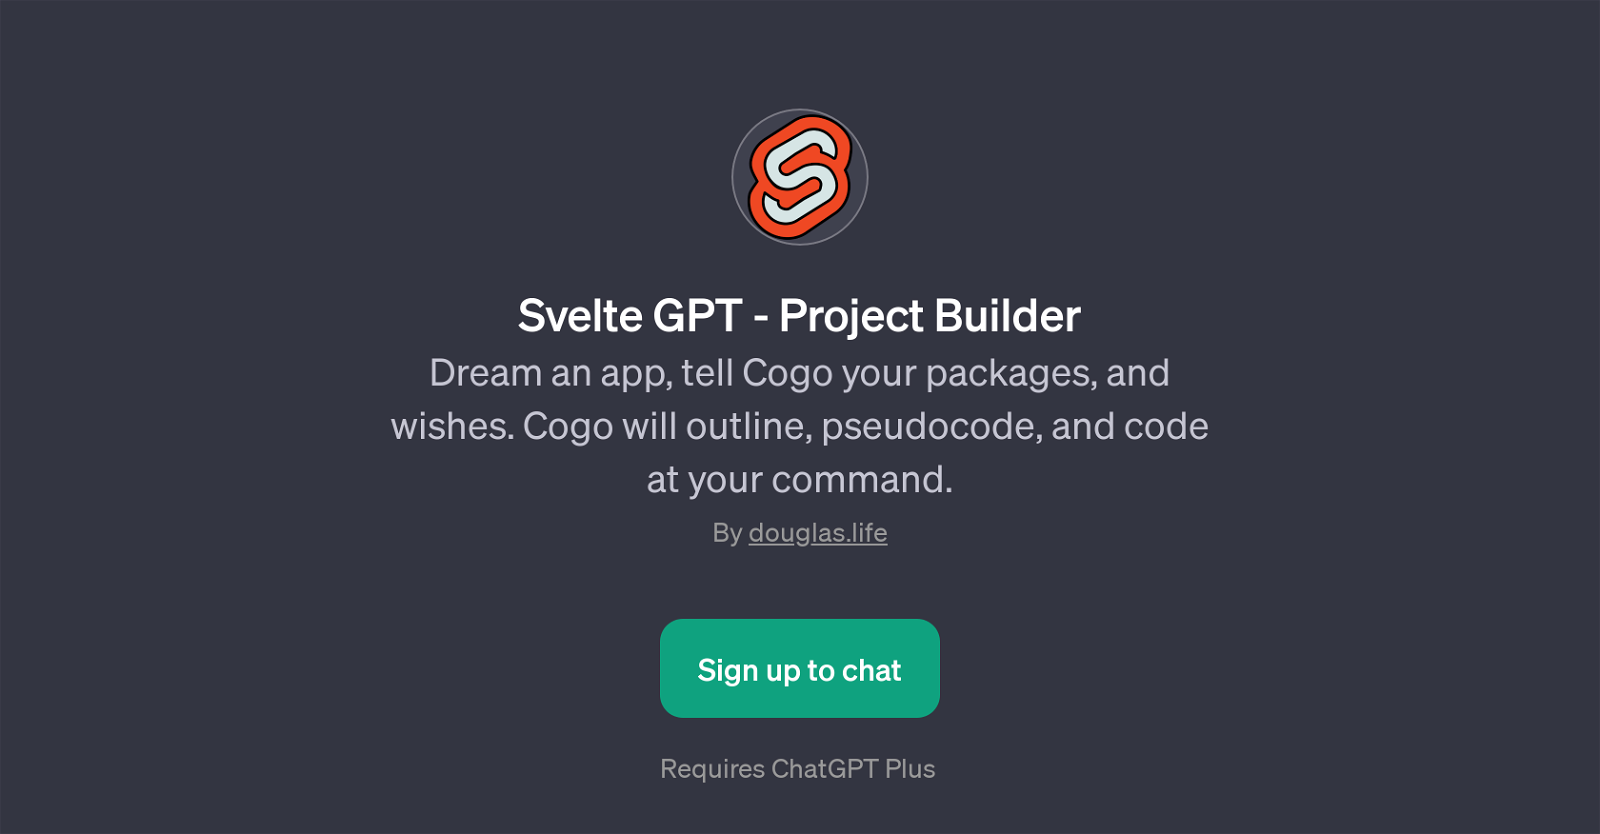 Svelte GPT - Project Builder website